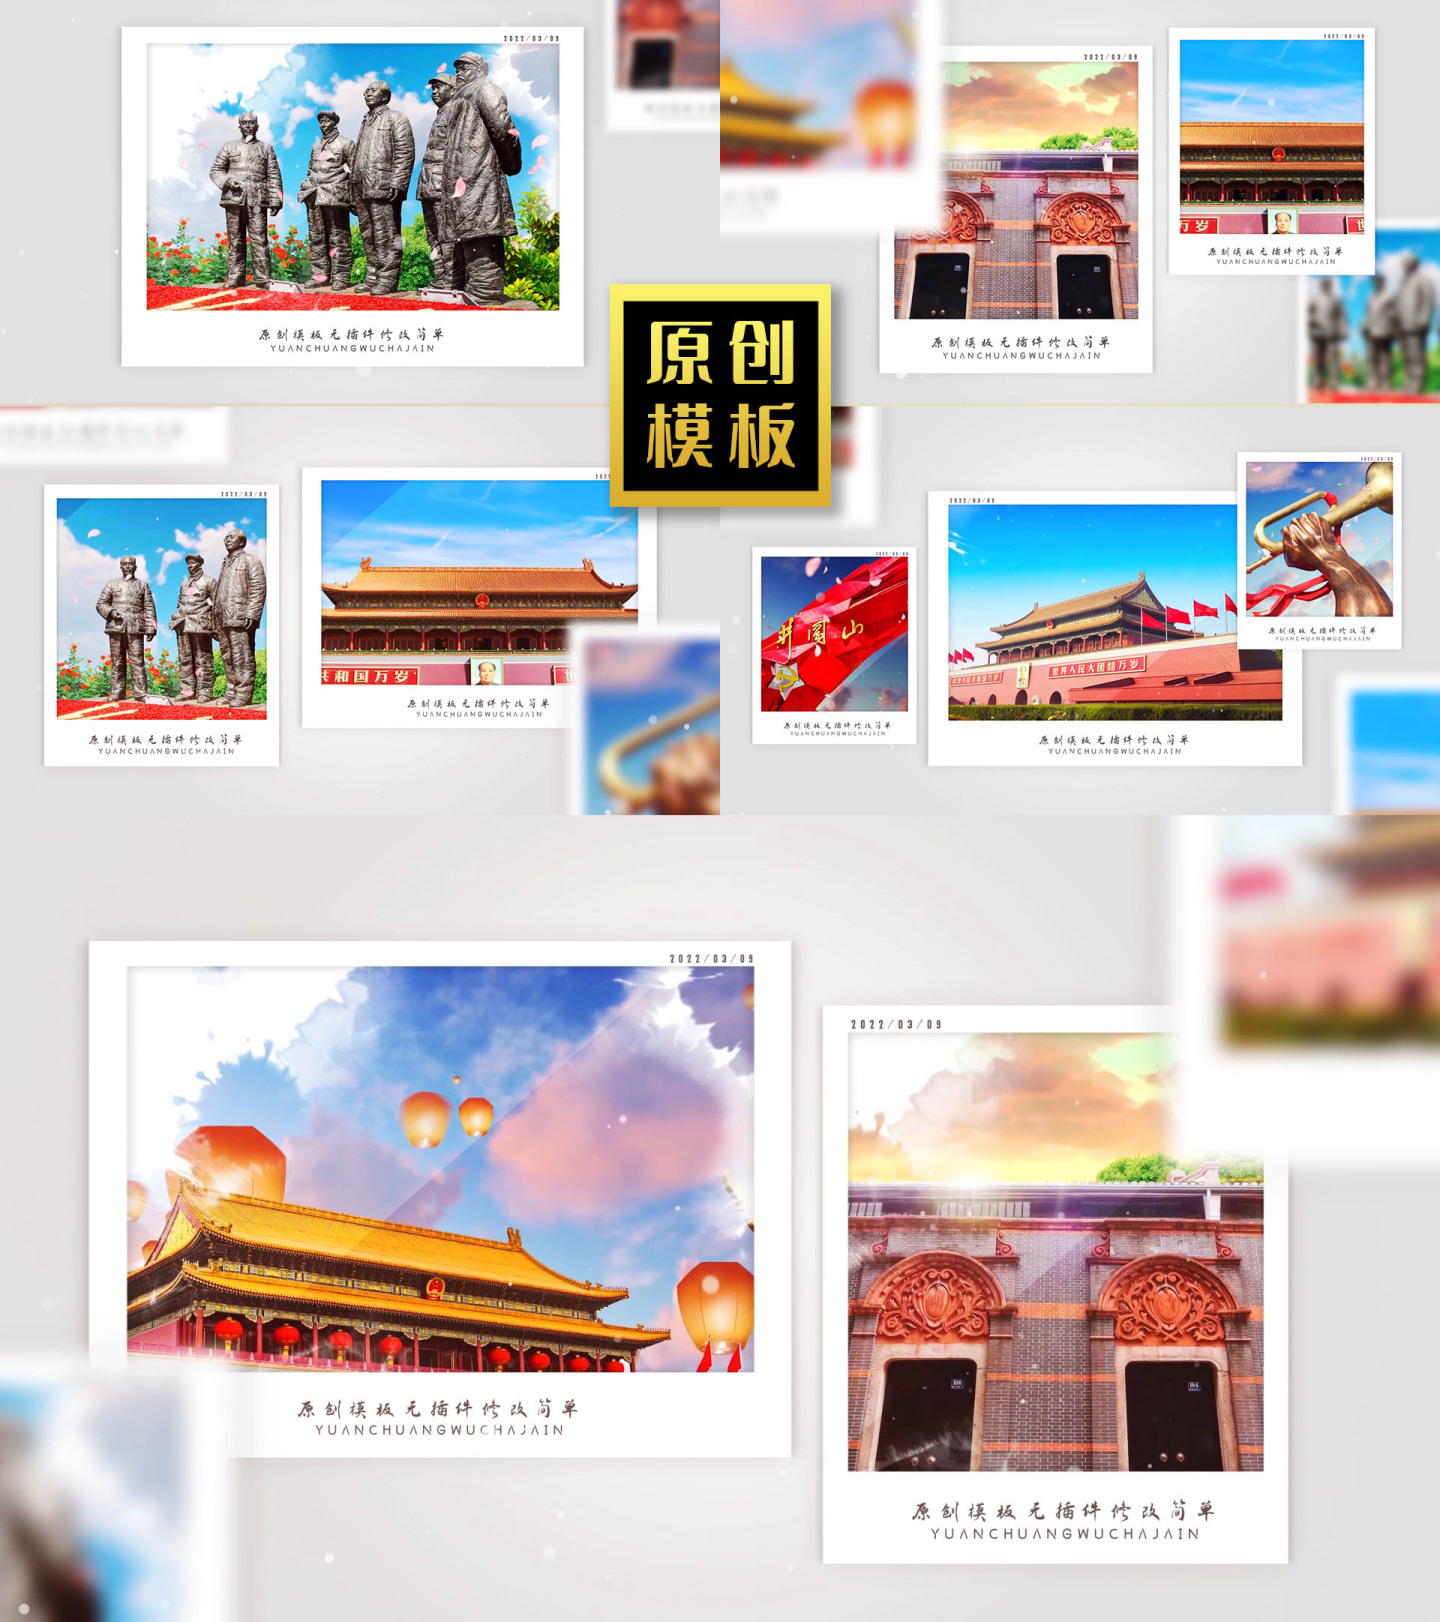 70图红色景点照片包装旅游纪念相册展示